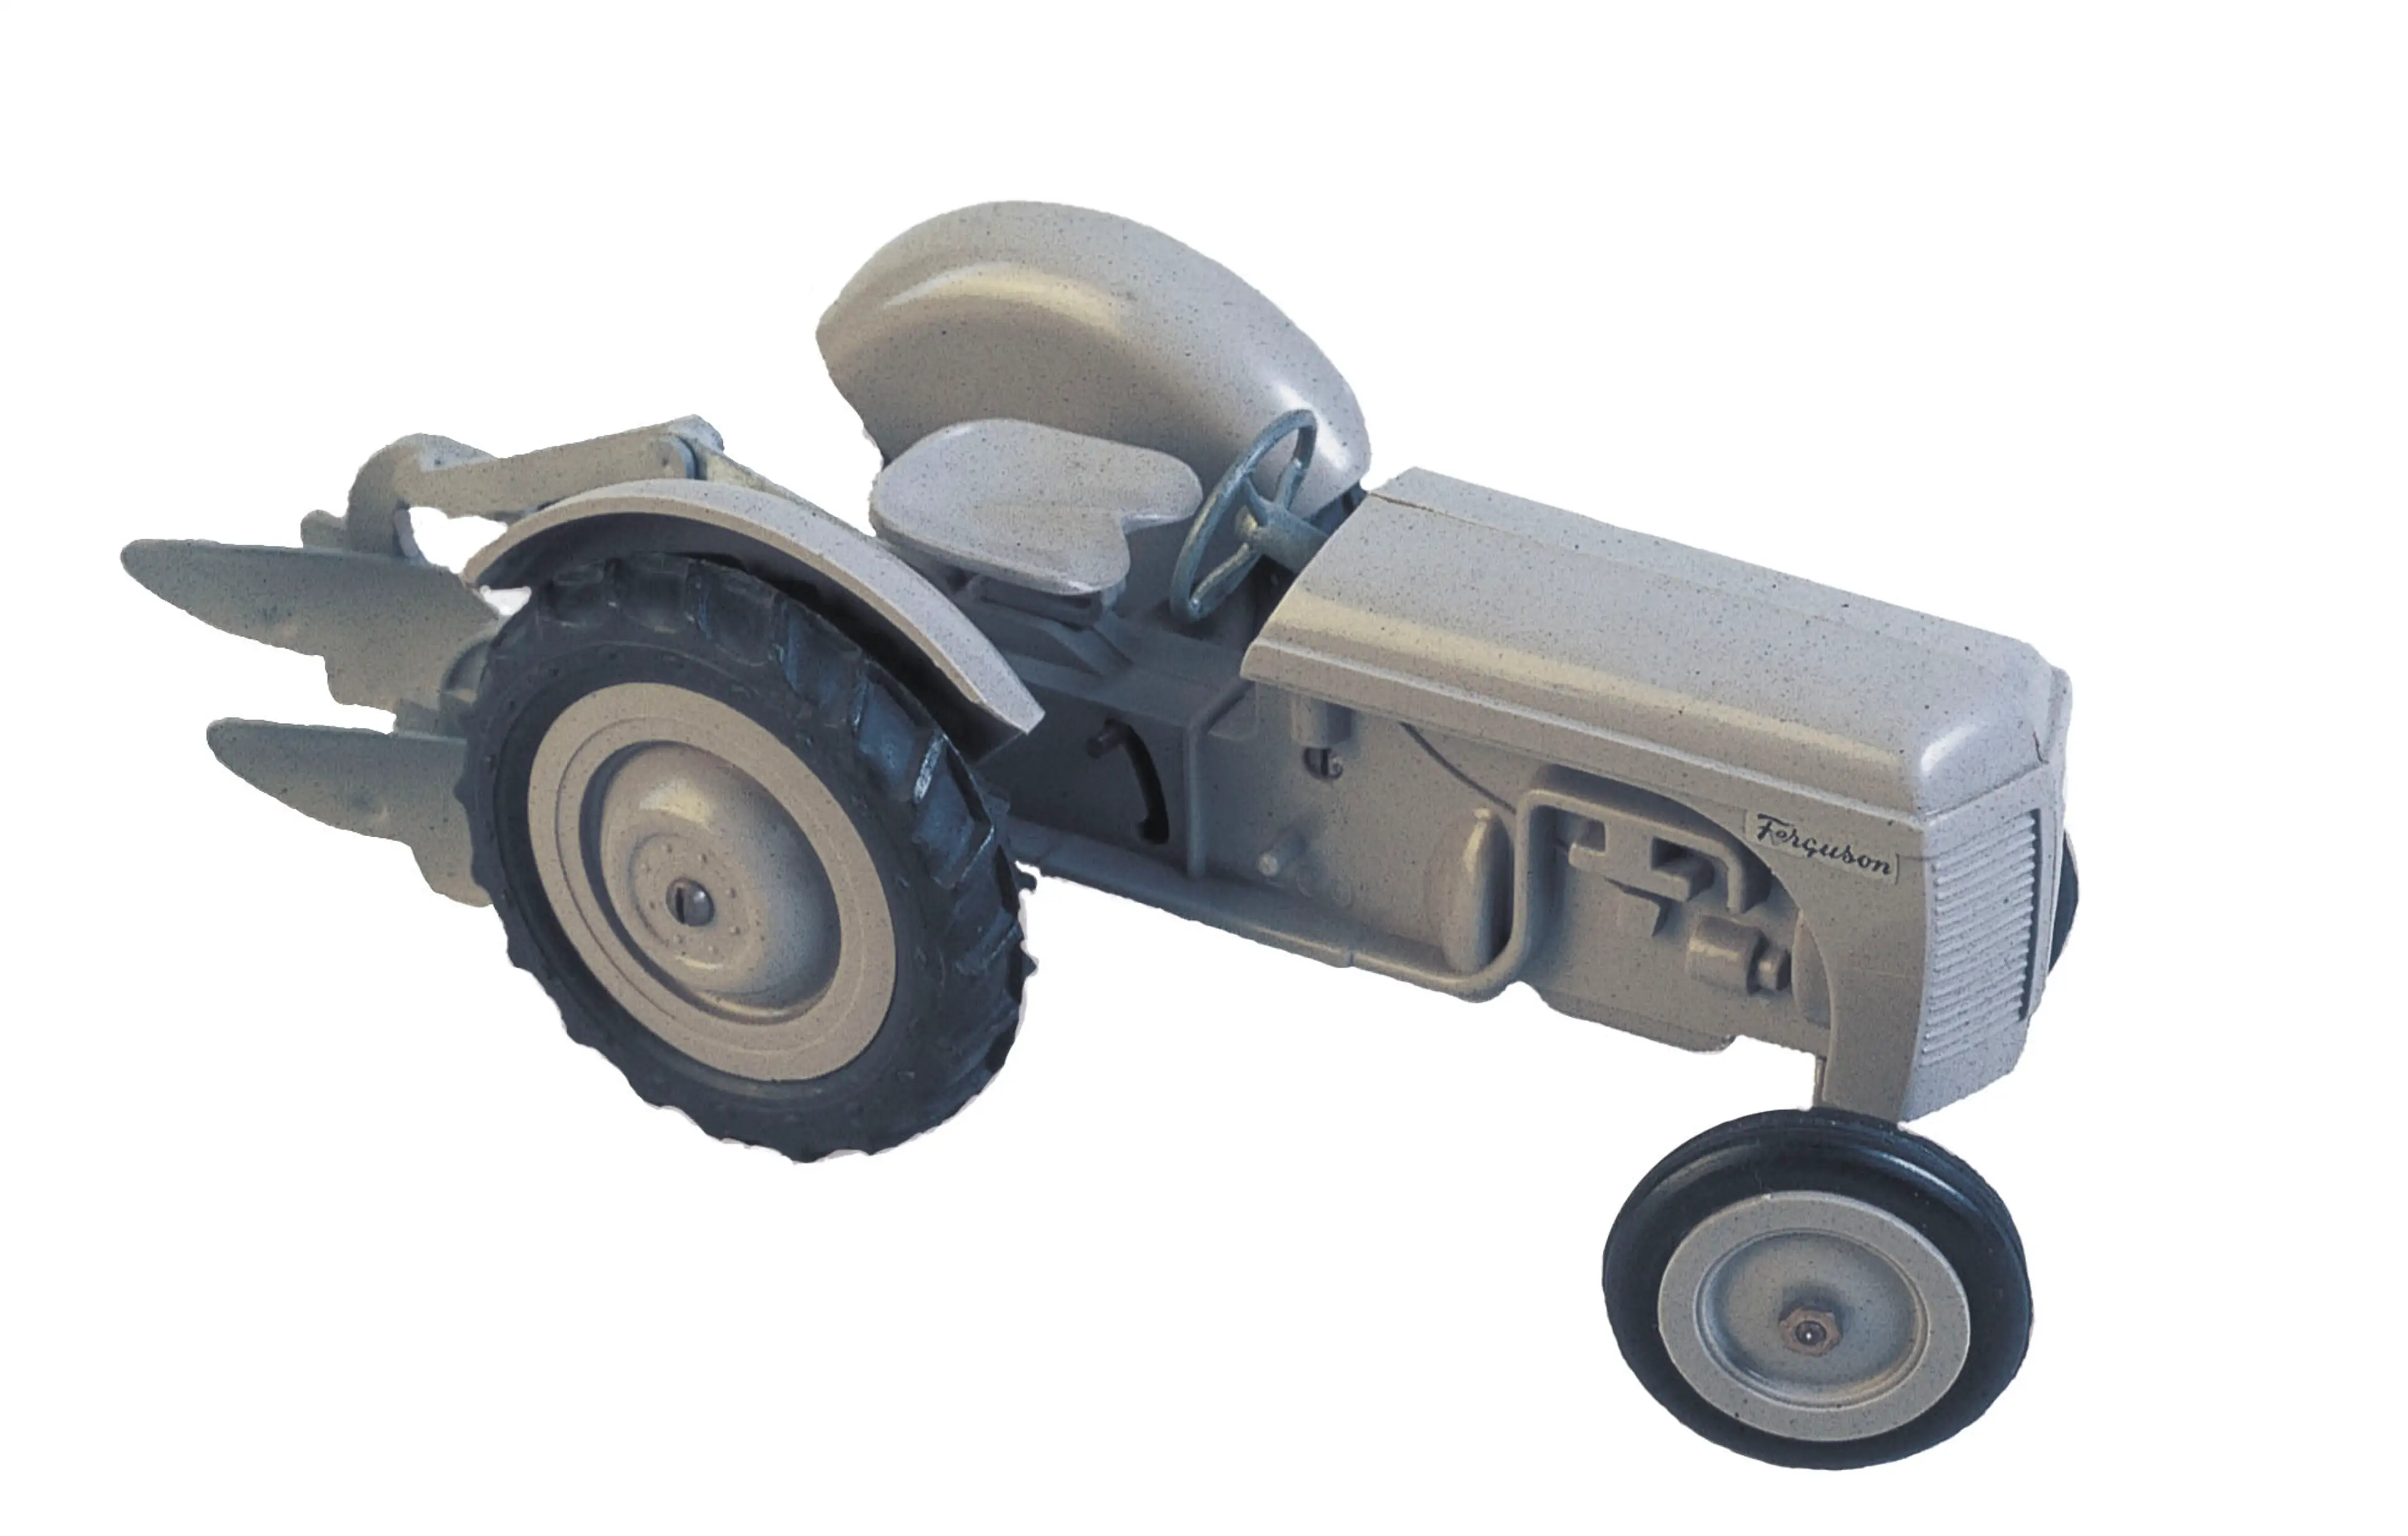 a grey plastic Ferguson tractor